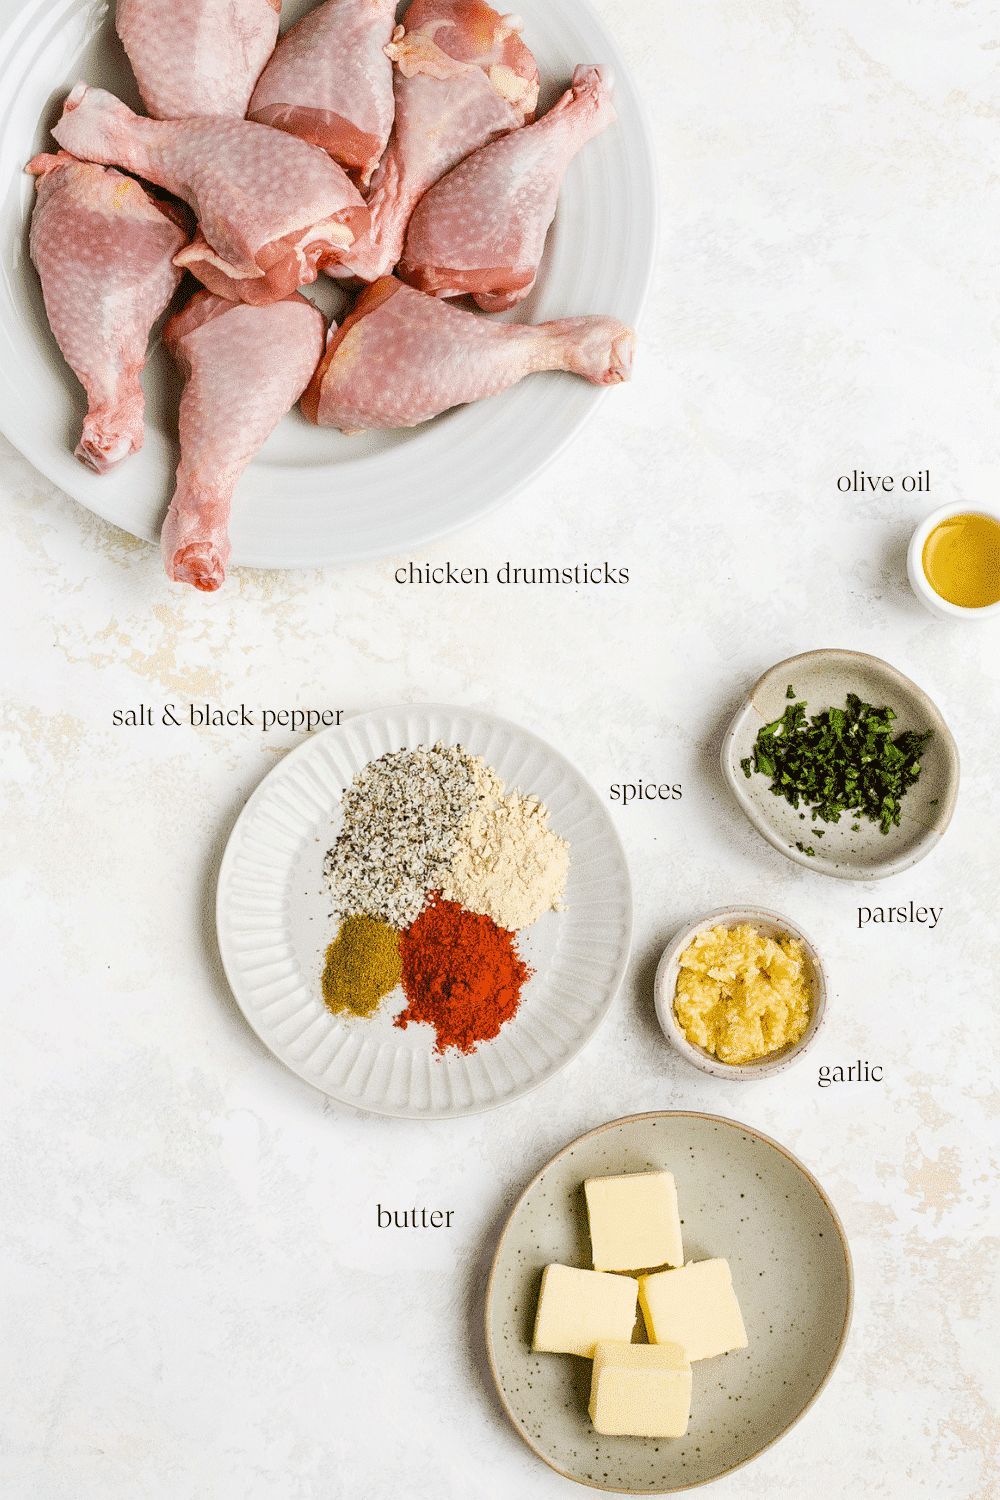 Ingredients for garlic butter baked chicken drumsticks. 